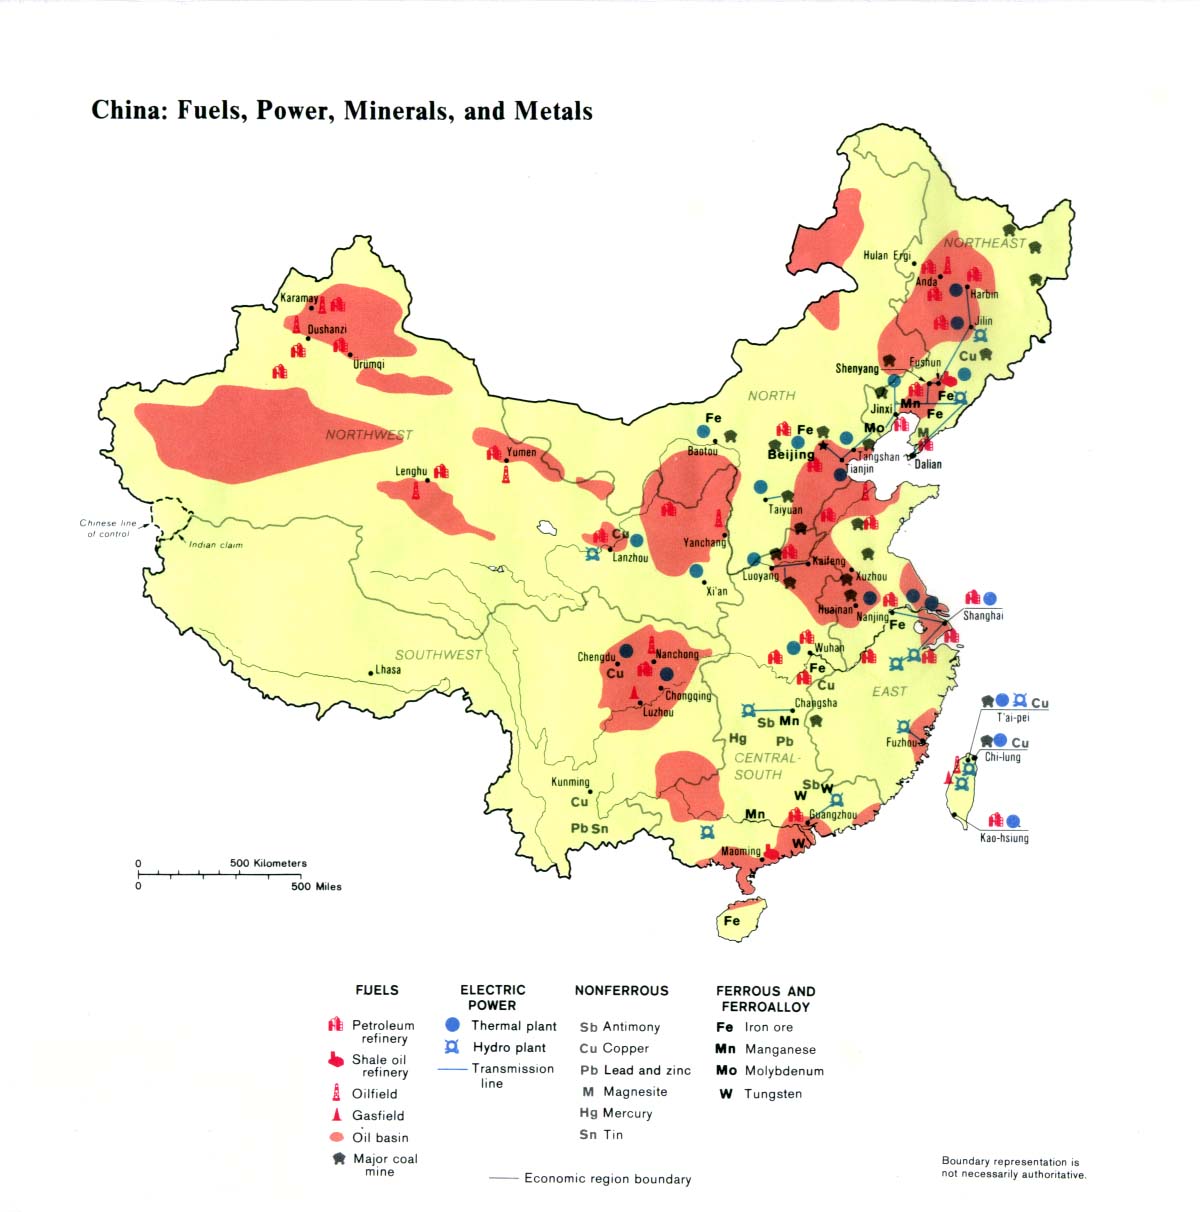 /dateien/pr26371,1246985854,China fuels 1983